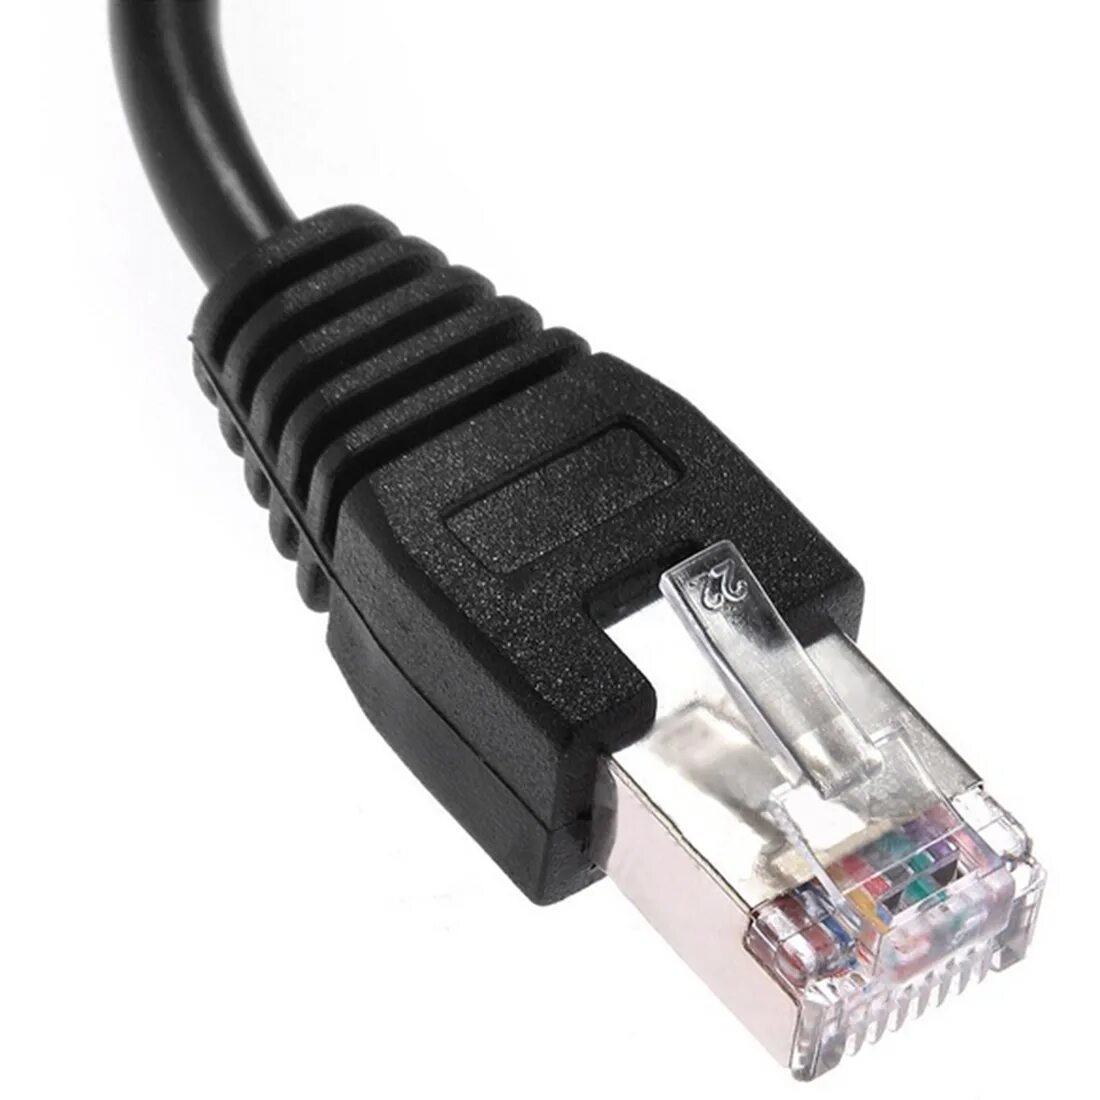 Разъем для сетевого кабеля. Соединитель rj45 - rj45. Разъем RJ-45 (Ethernet). Сетевой кабель в рж45. Rg45-rg45.